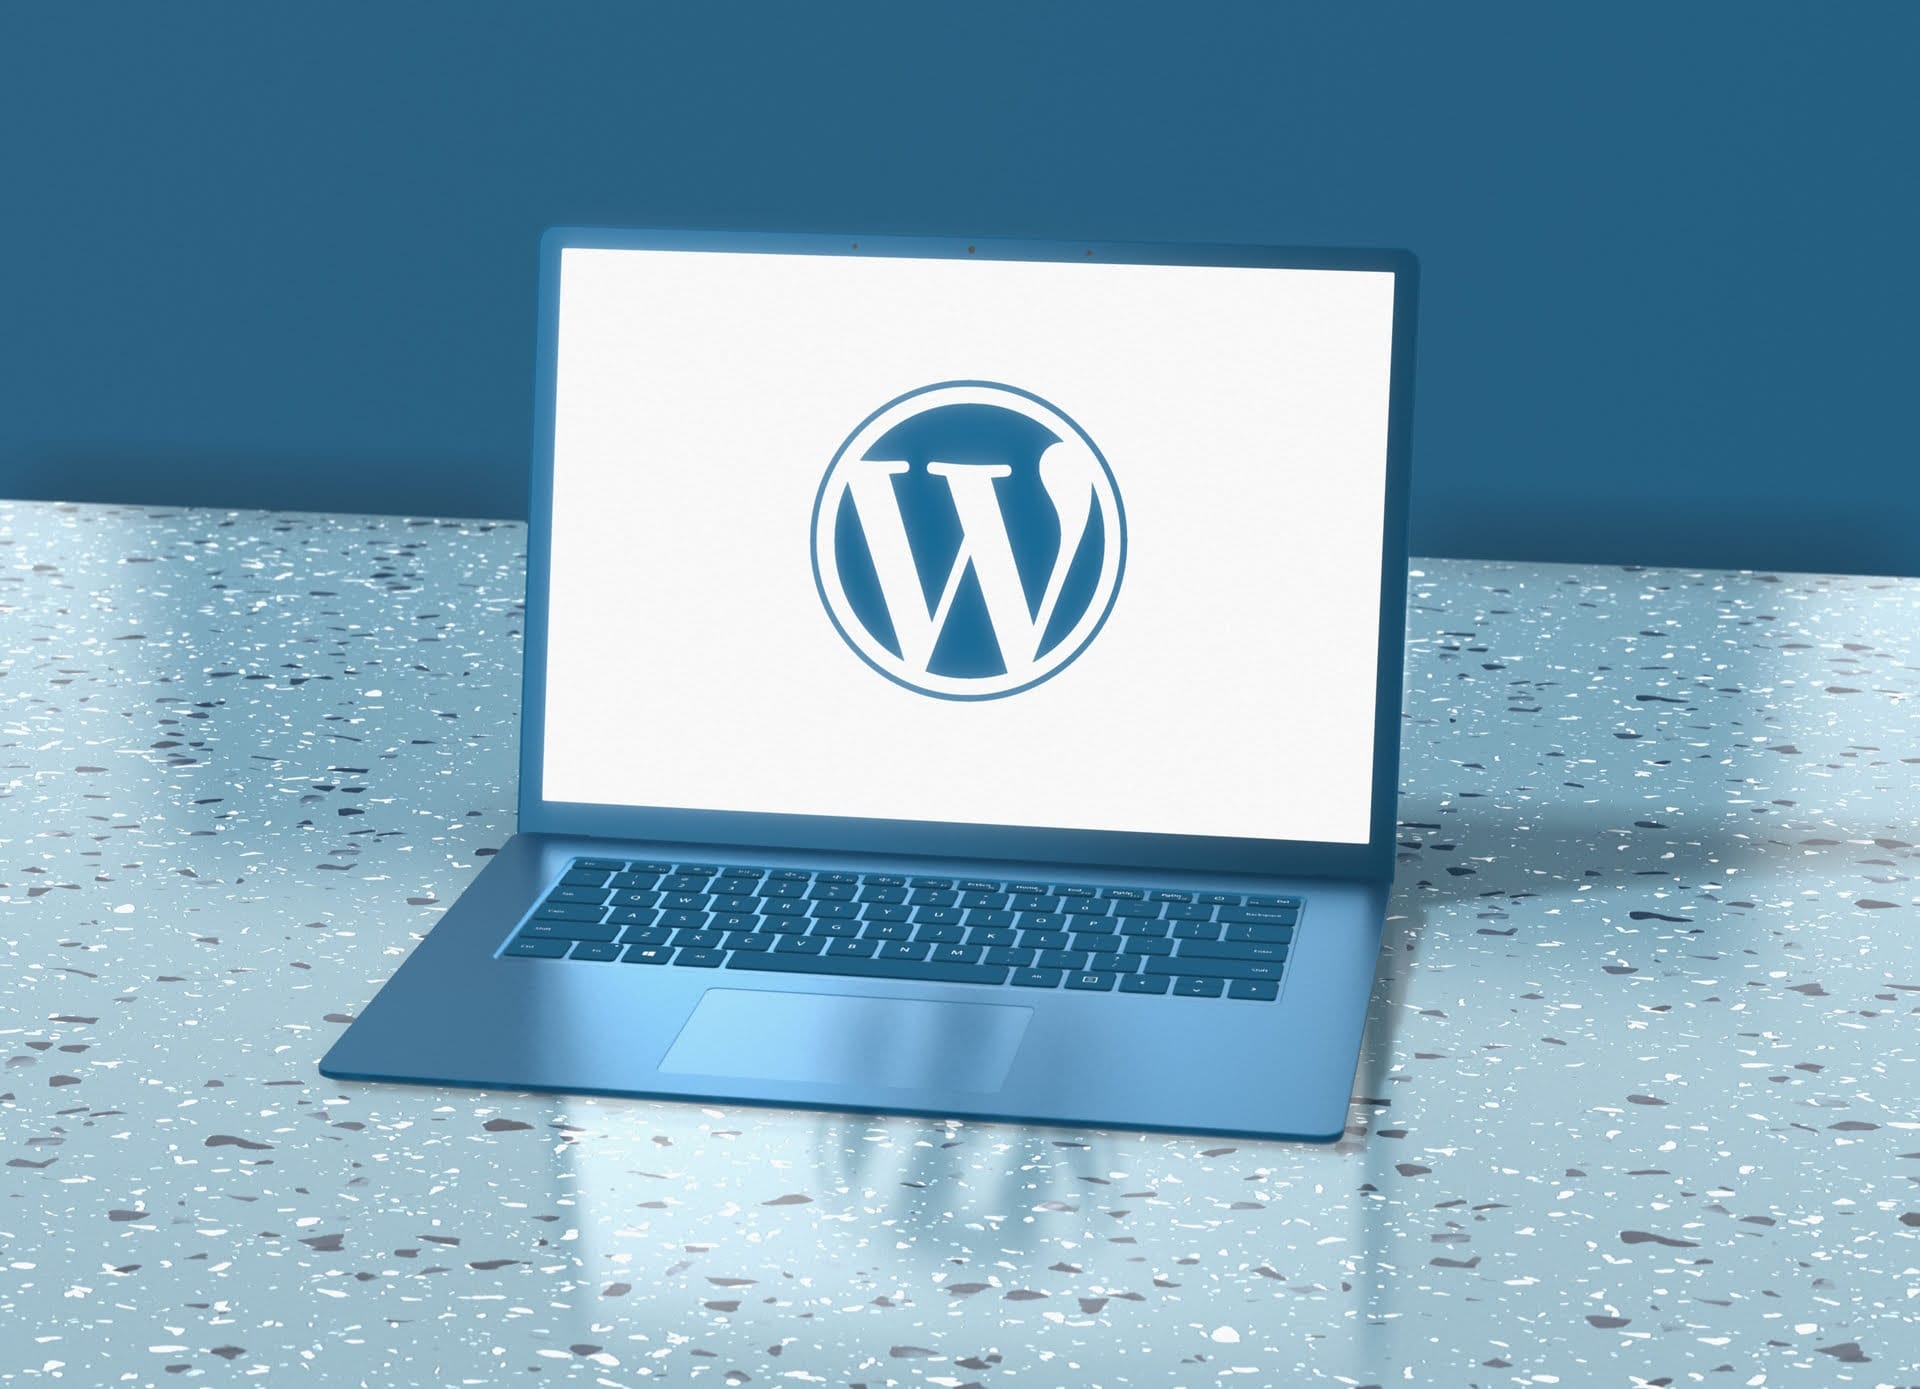 Come creare un multisito WordPress guida passo passo